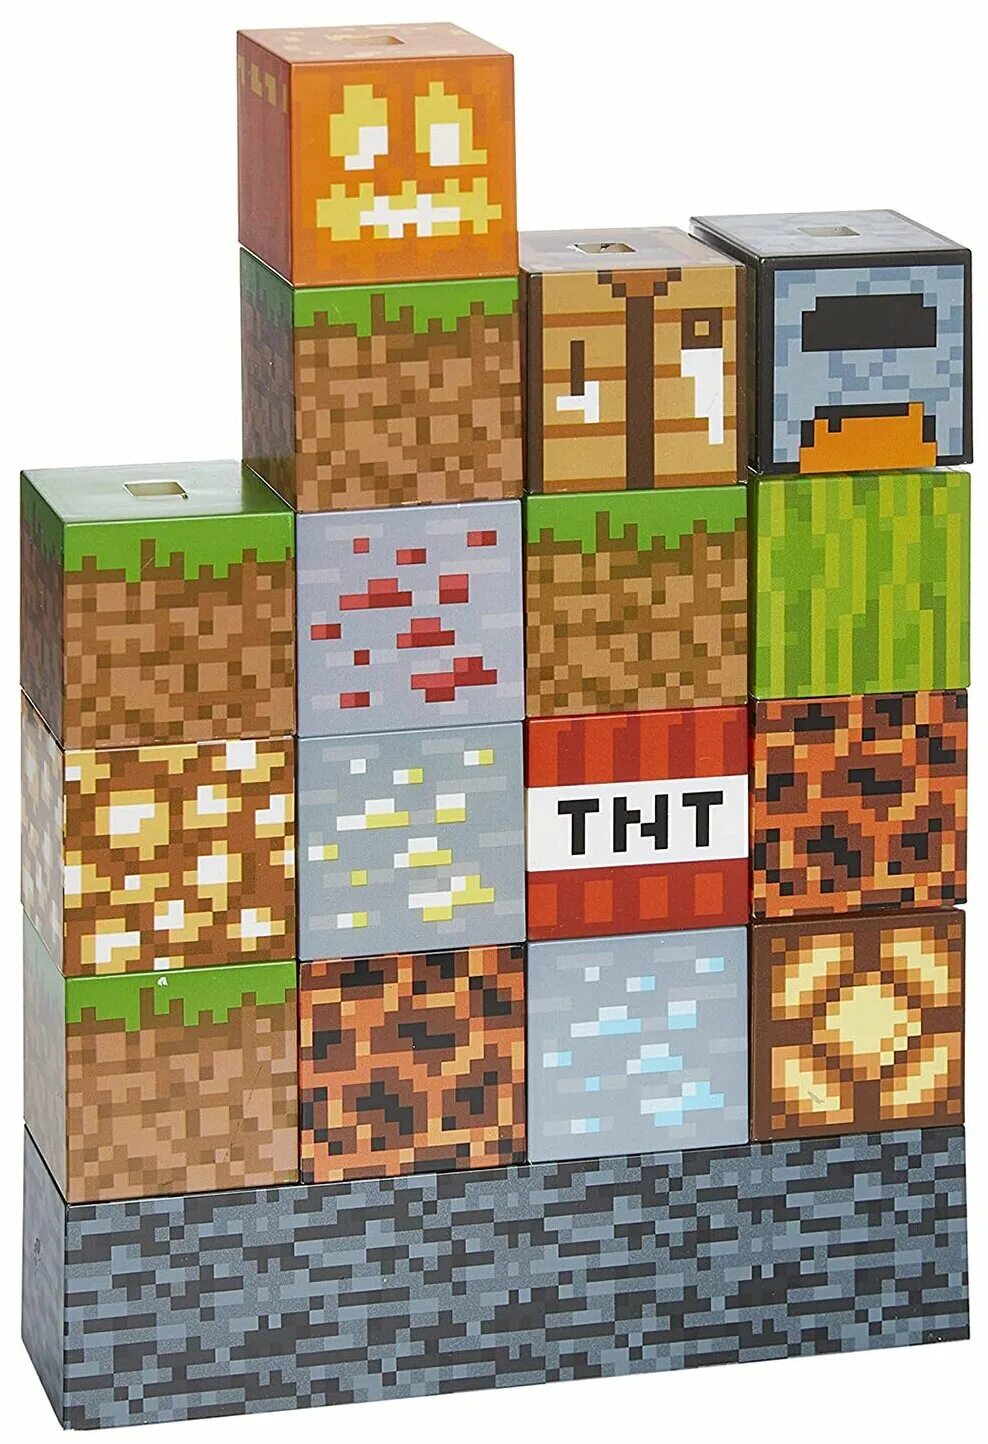 Minecraft blocks. Светильник Minecraft: Block building. Paladone светильник Minecraft. Светильник майнкрафт Block building Light. Светильник майнкрафт блоки.